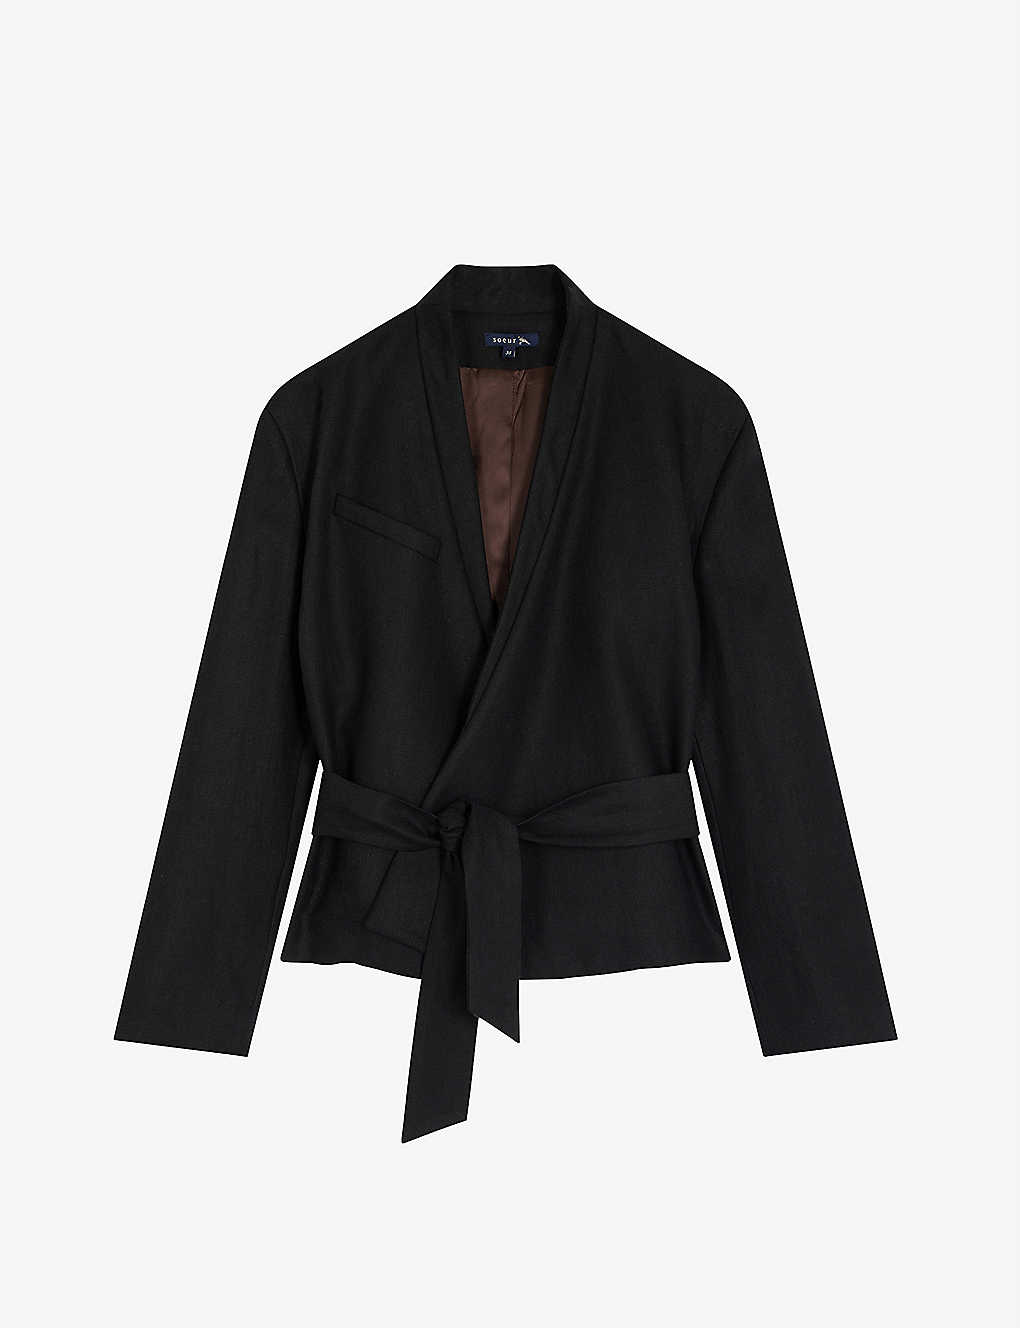 Pampelune belted wrap linen jacket Selfridges & Co Women Clothing Jackets Blazers 